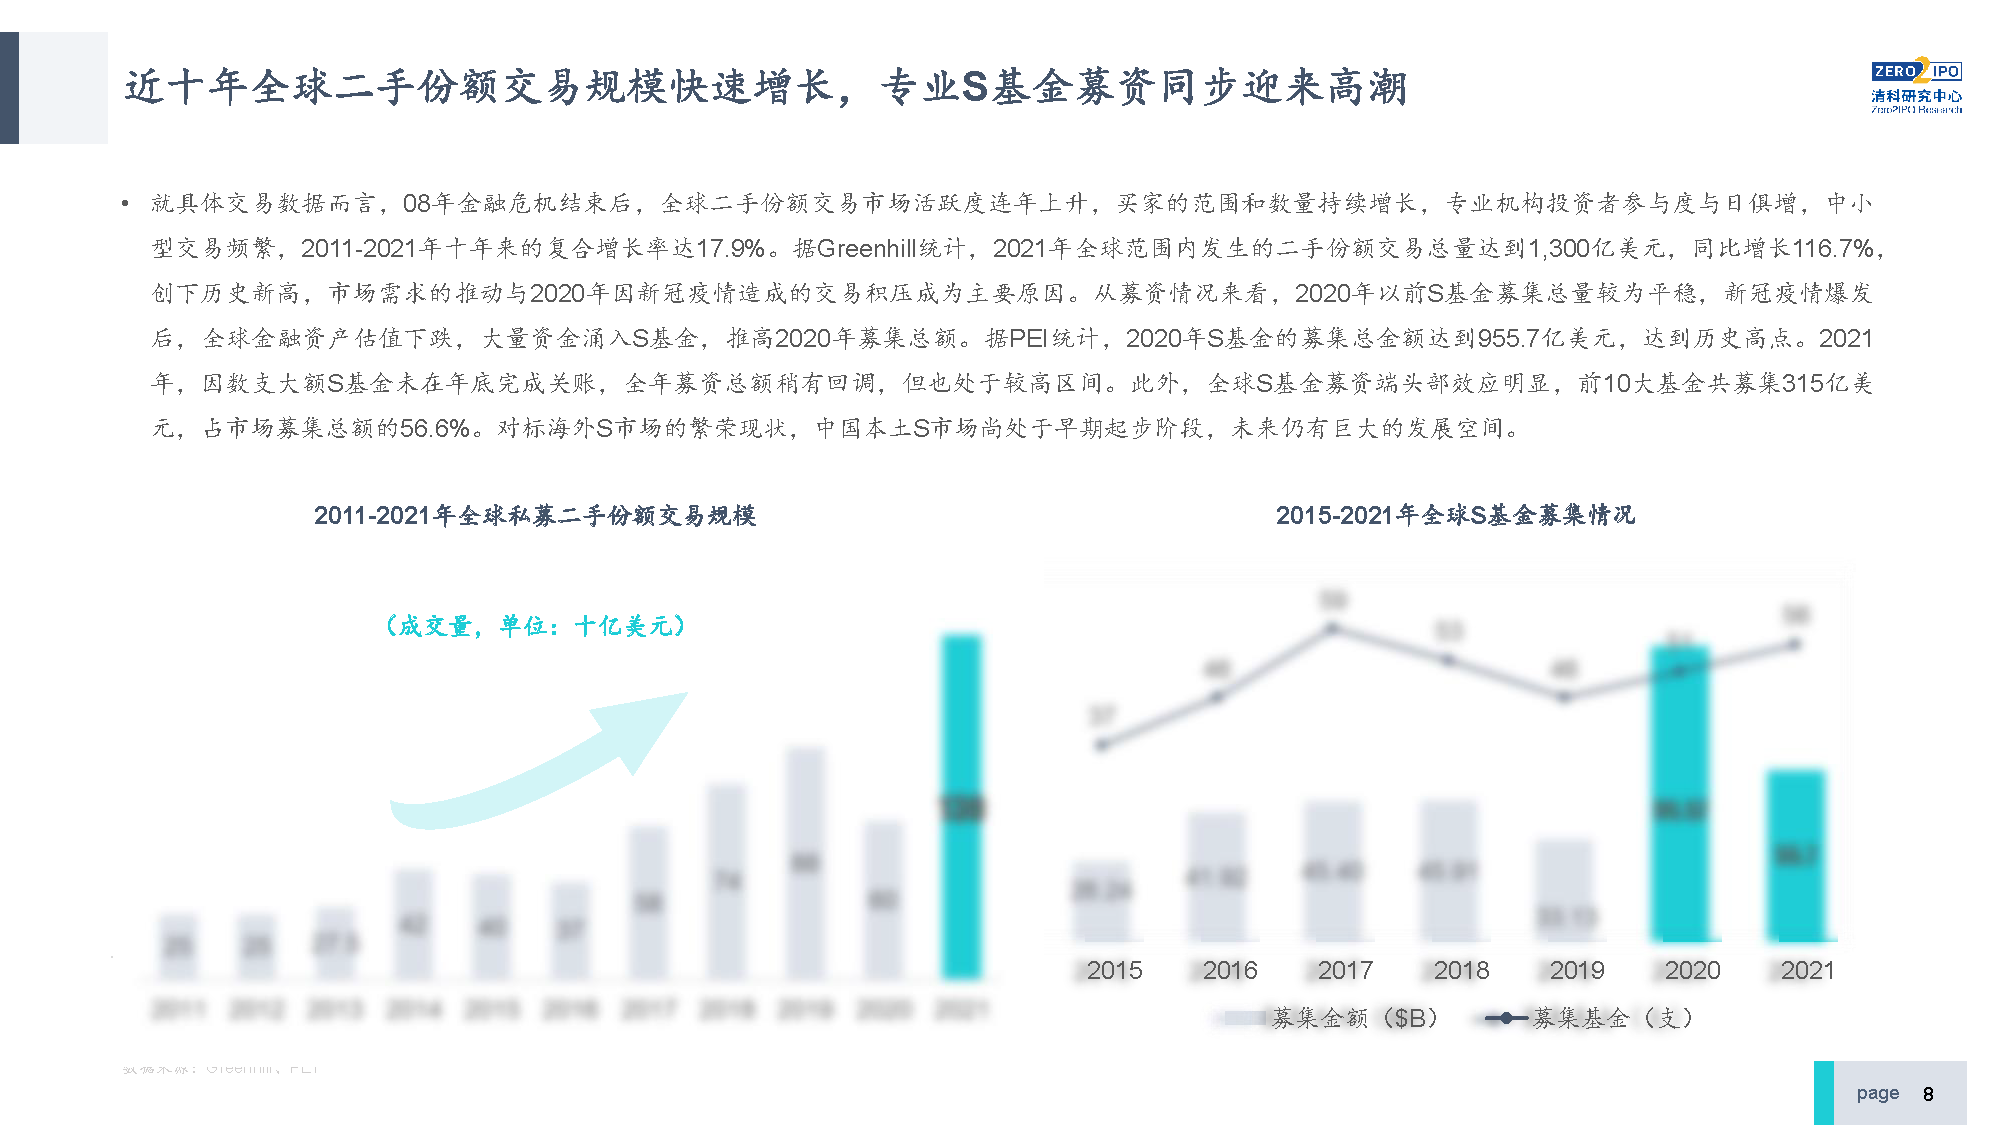 【发布版】2022年中国私募股权S交易研究报告_页面_08.png